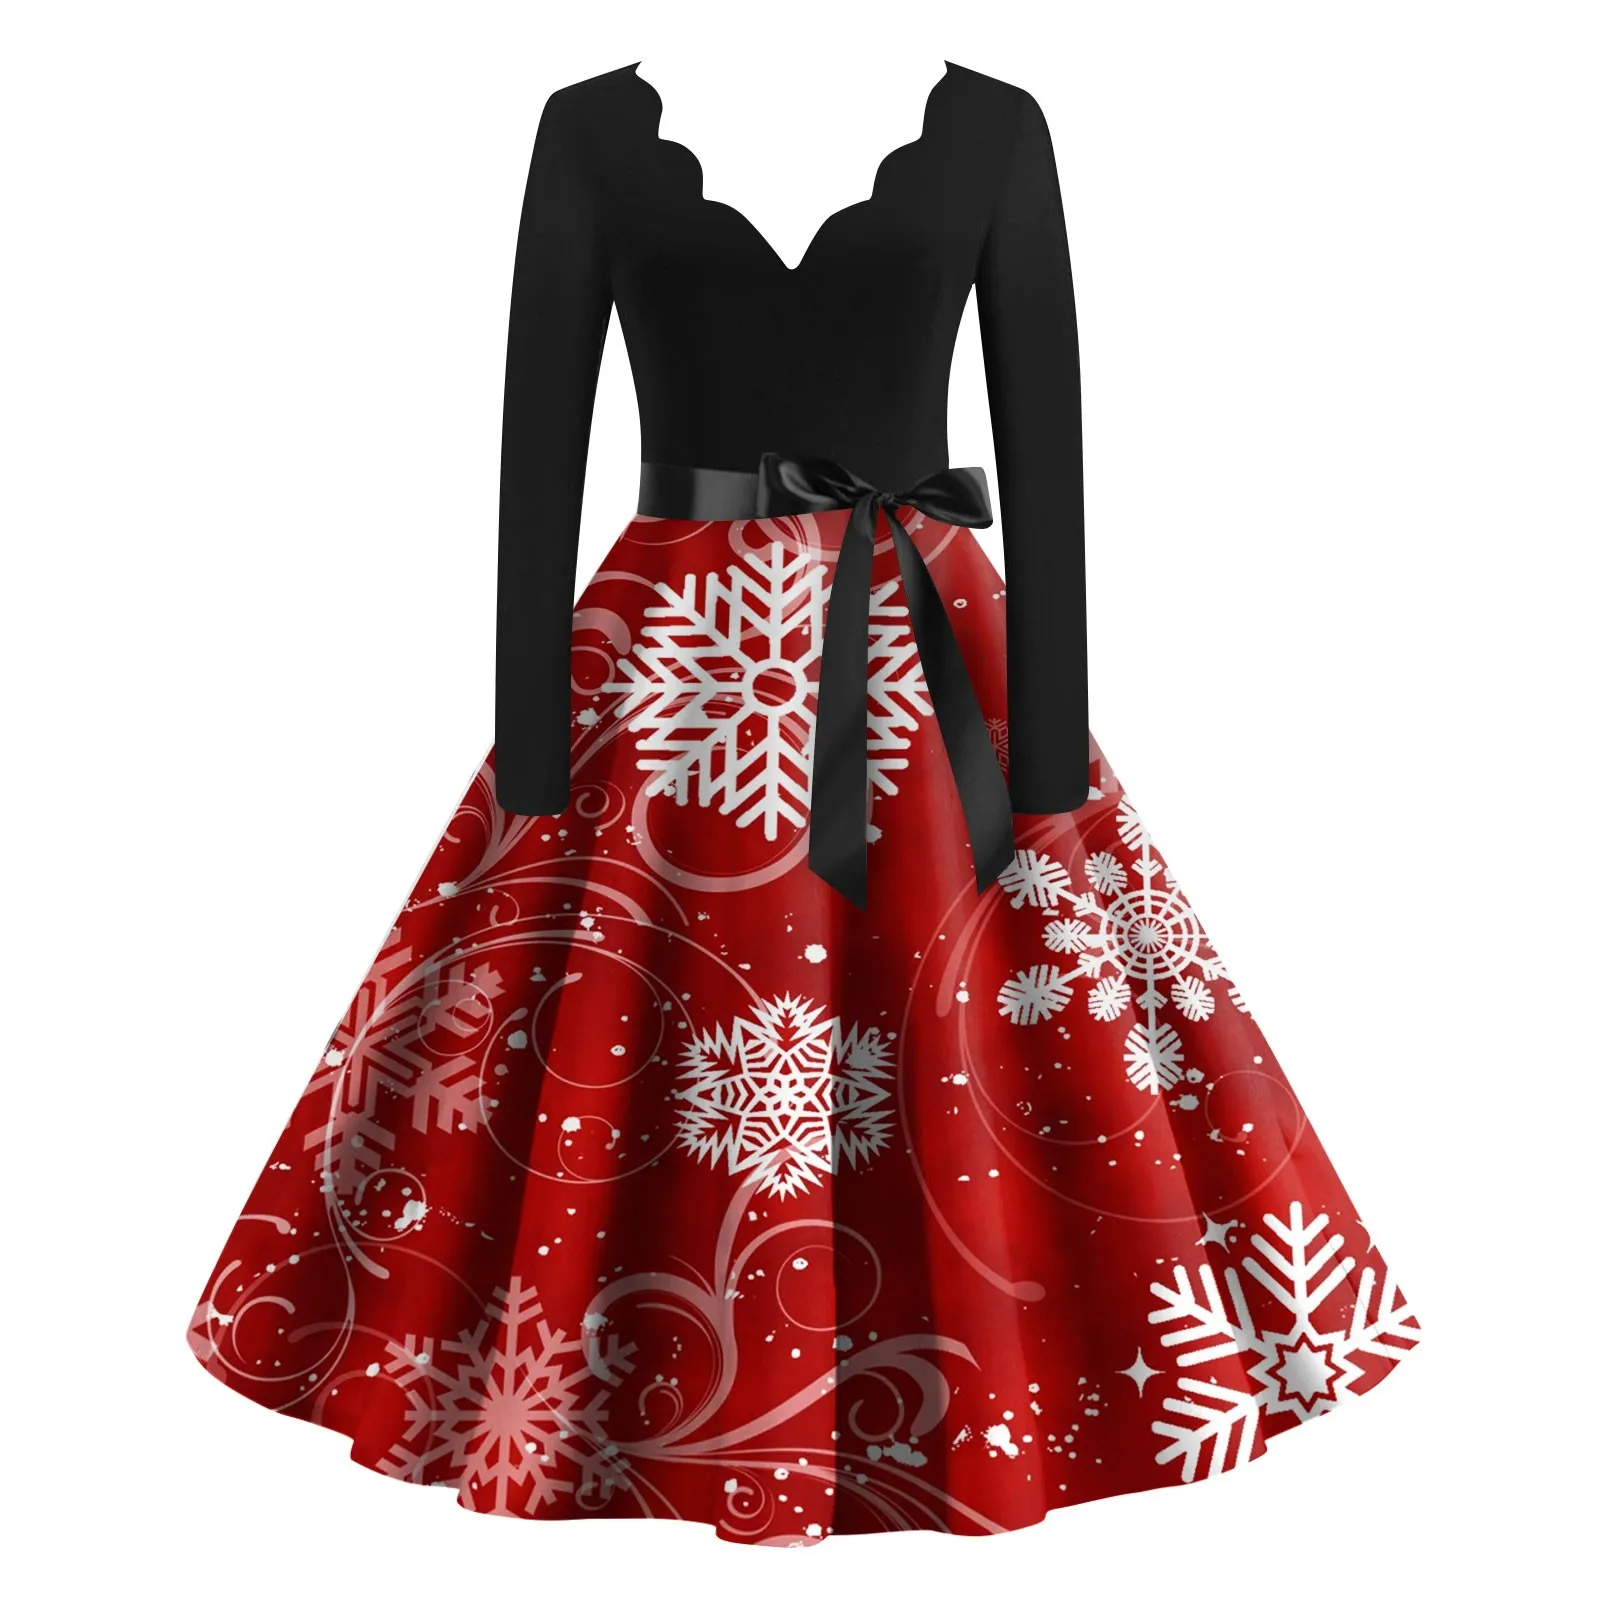 

Женское винтажное платье с принтом снежинок, черное платье с длинным рукавом, пышной юбкой в стиле рокабилли, вечерний наряд для женщин на зиму